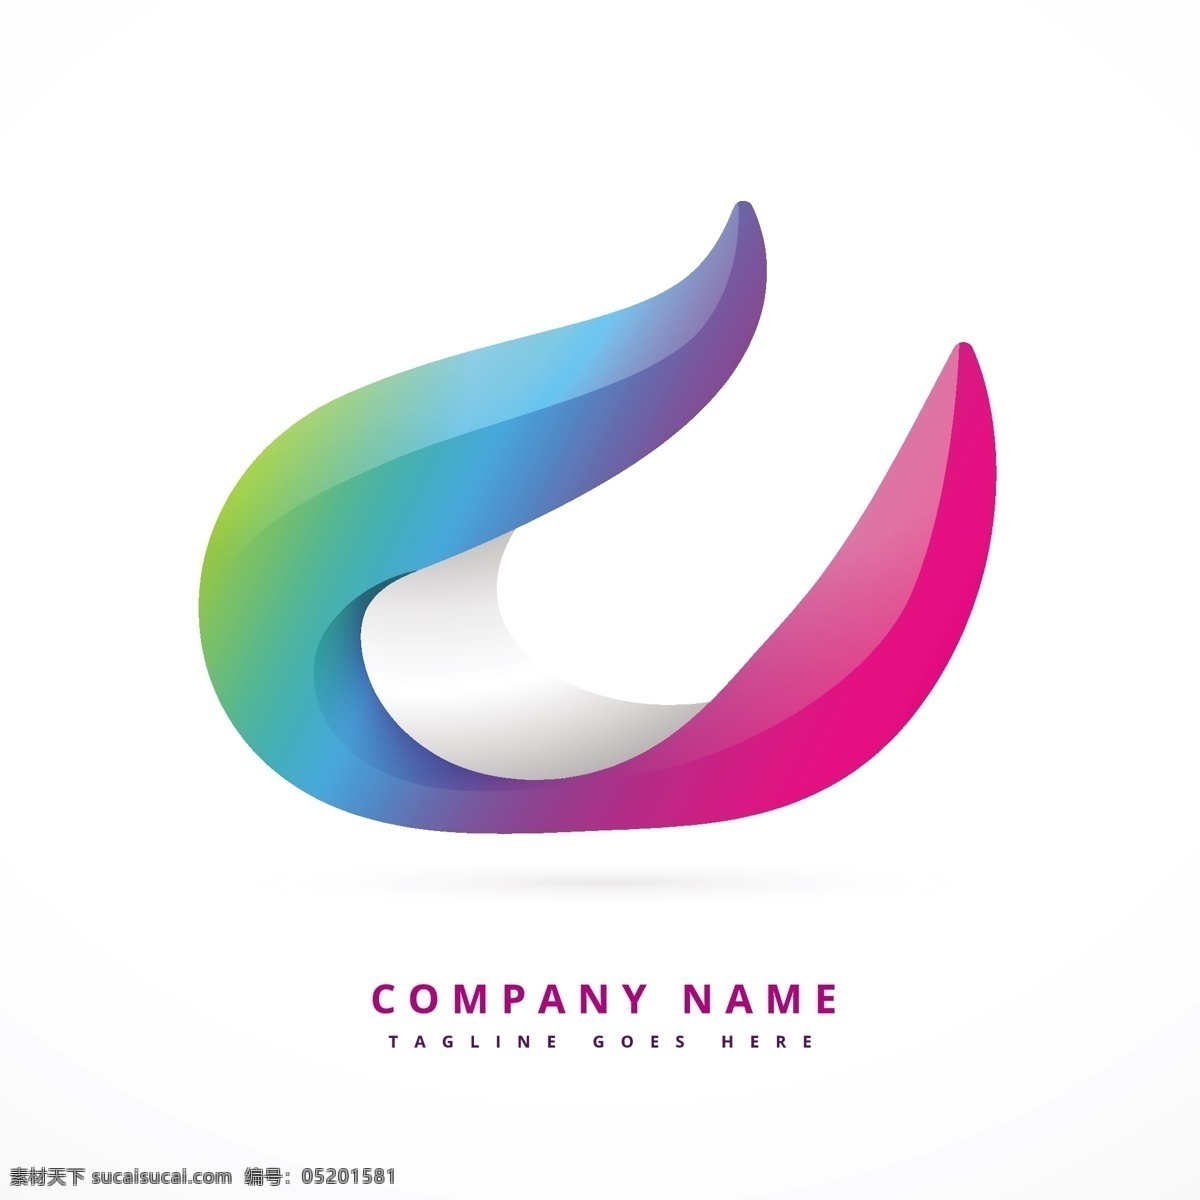 三维彩色图案 标识 业务摘要 营销 3d 涡流 企业 公司 品牌 丰富多彩的 抽象的图案 形状 现代企业形象 身份 三维标志 企业标志 公司标志 白色